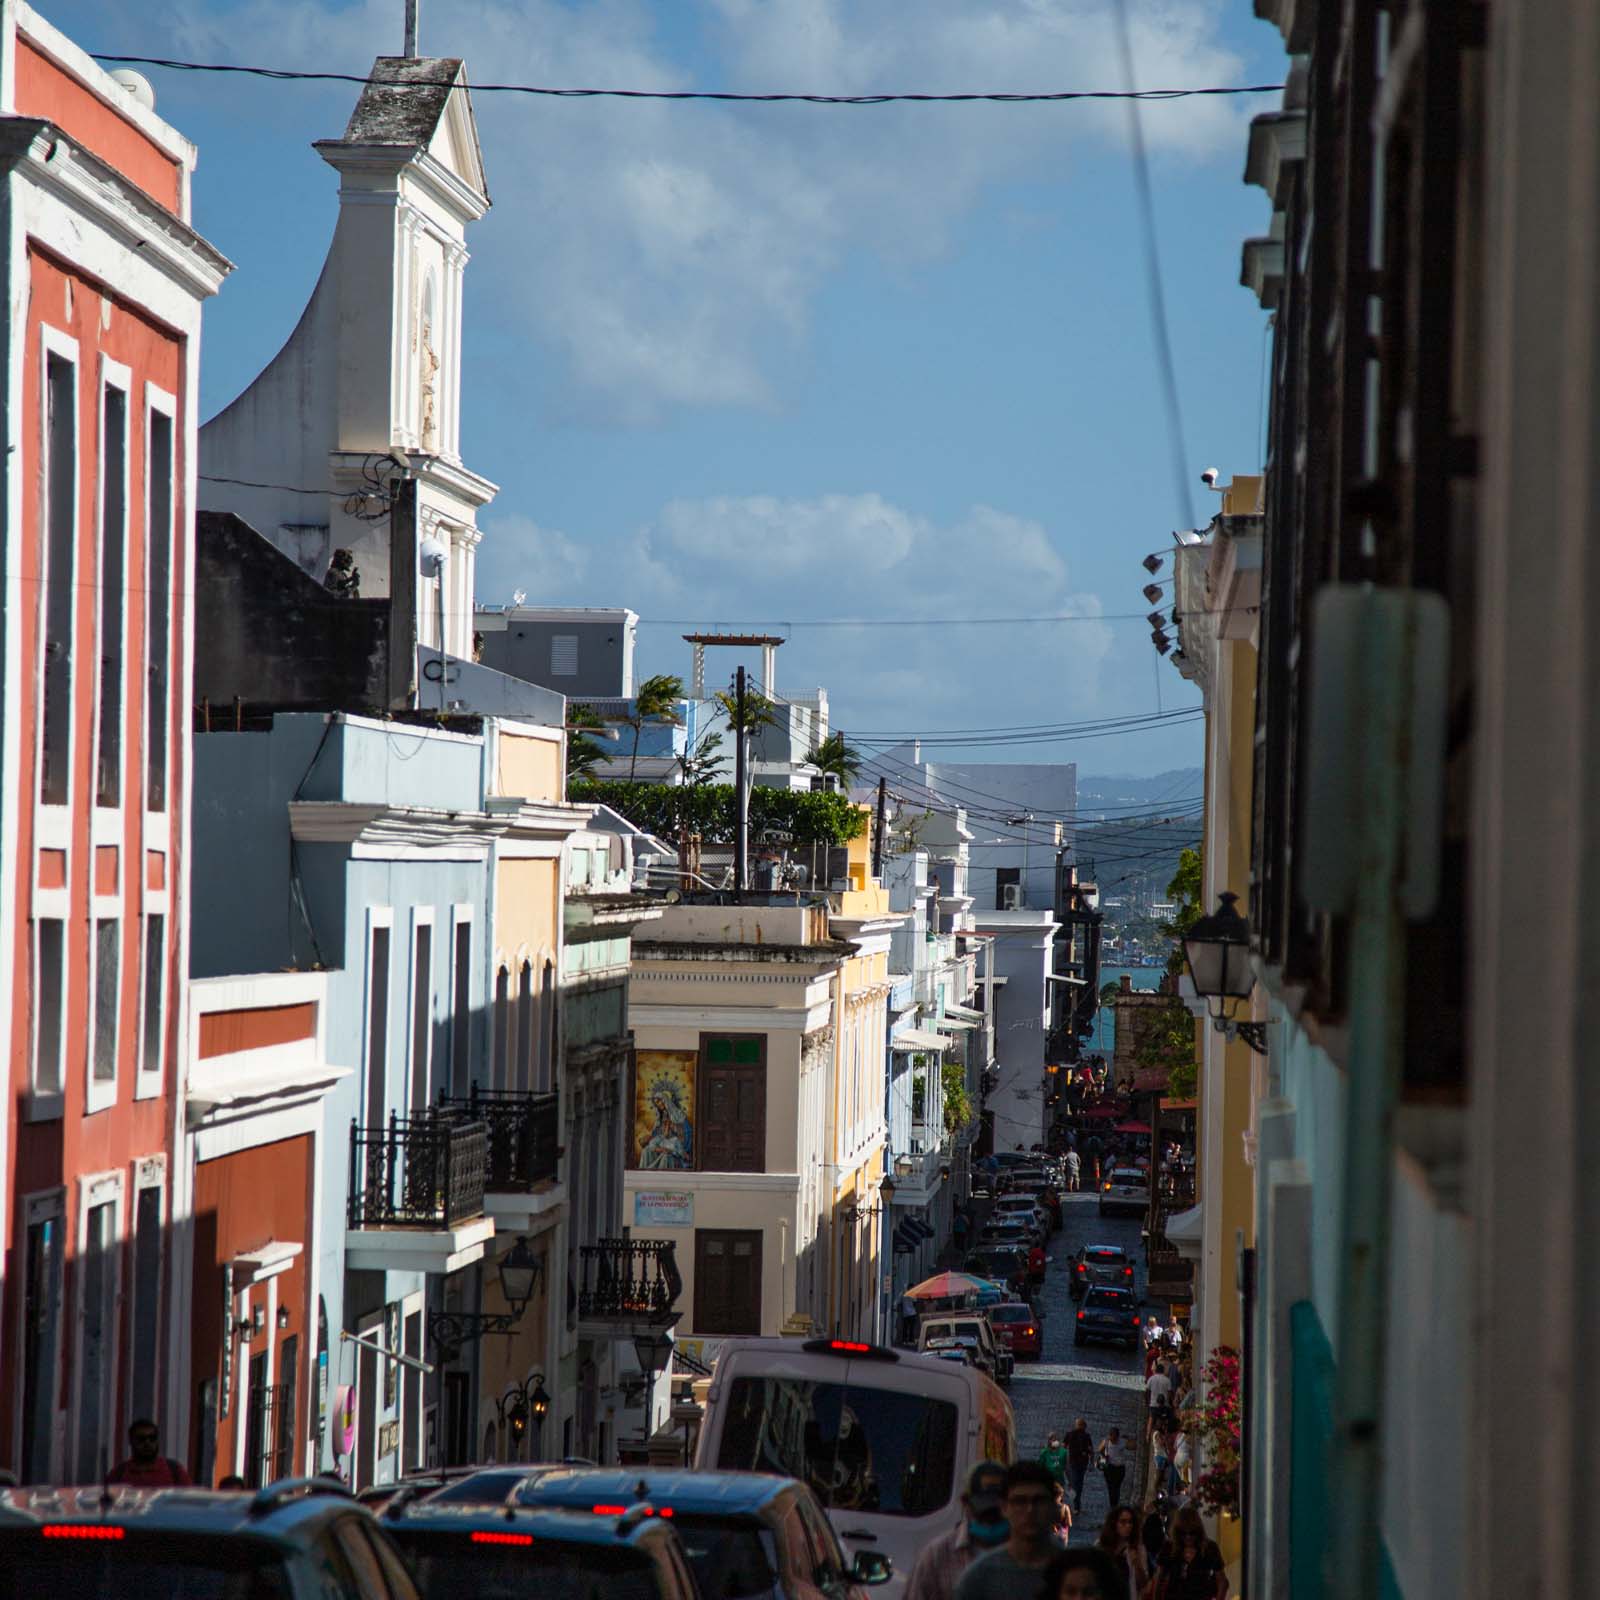 Take a trip around Viejo San Juan